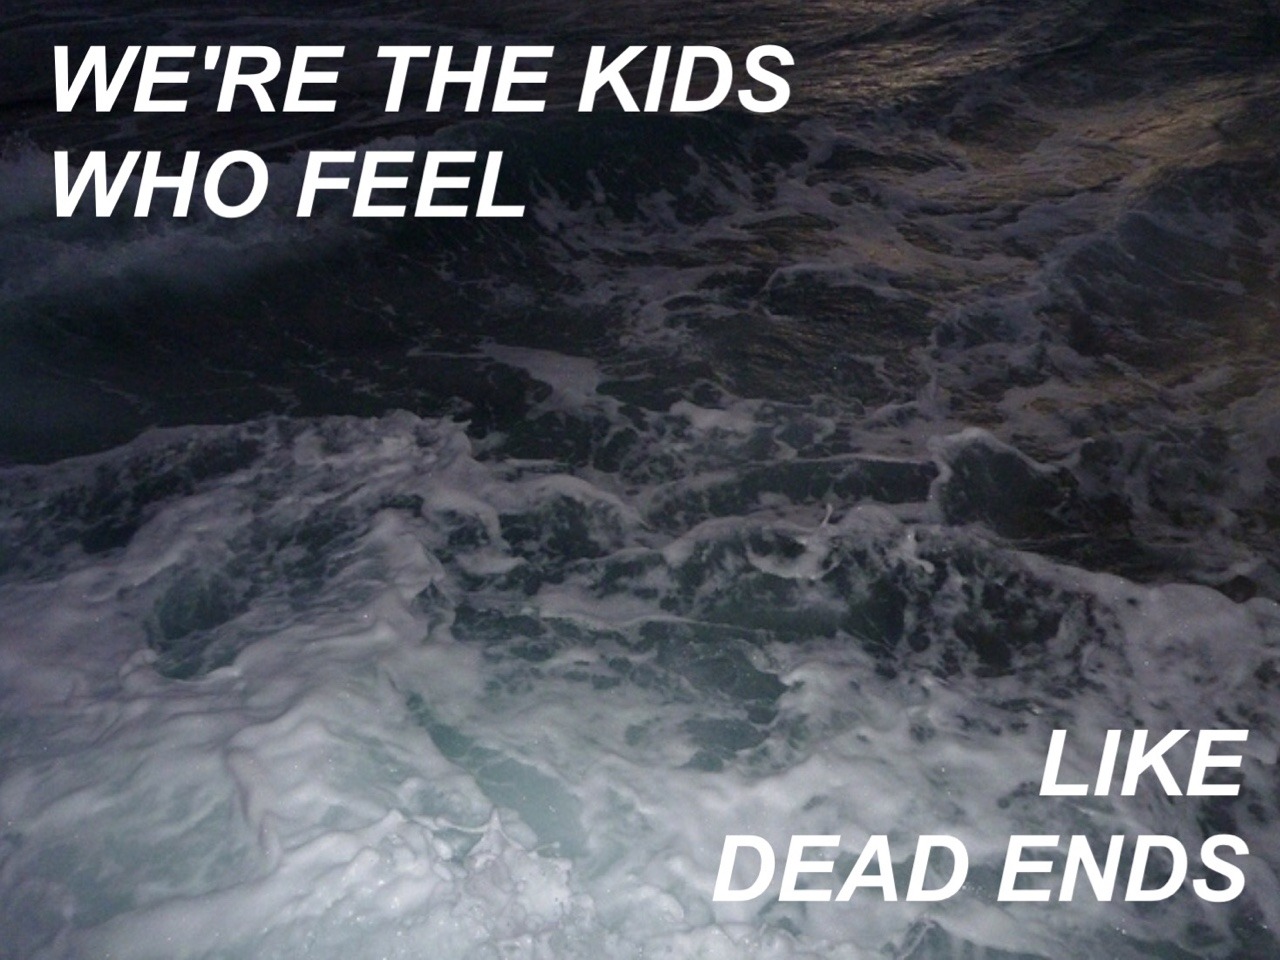 lyrics alley | Tumblr